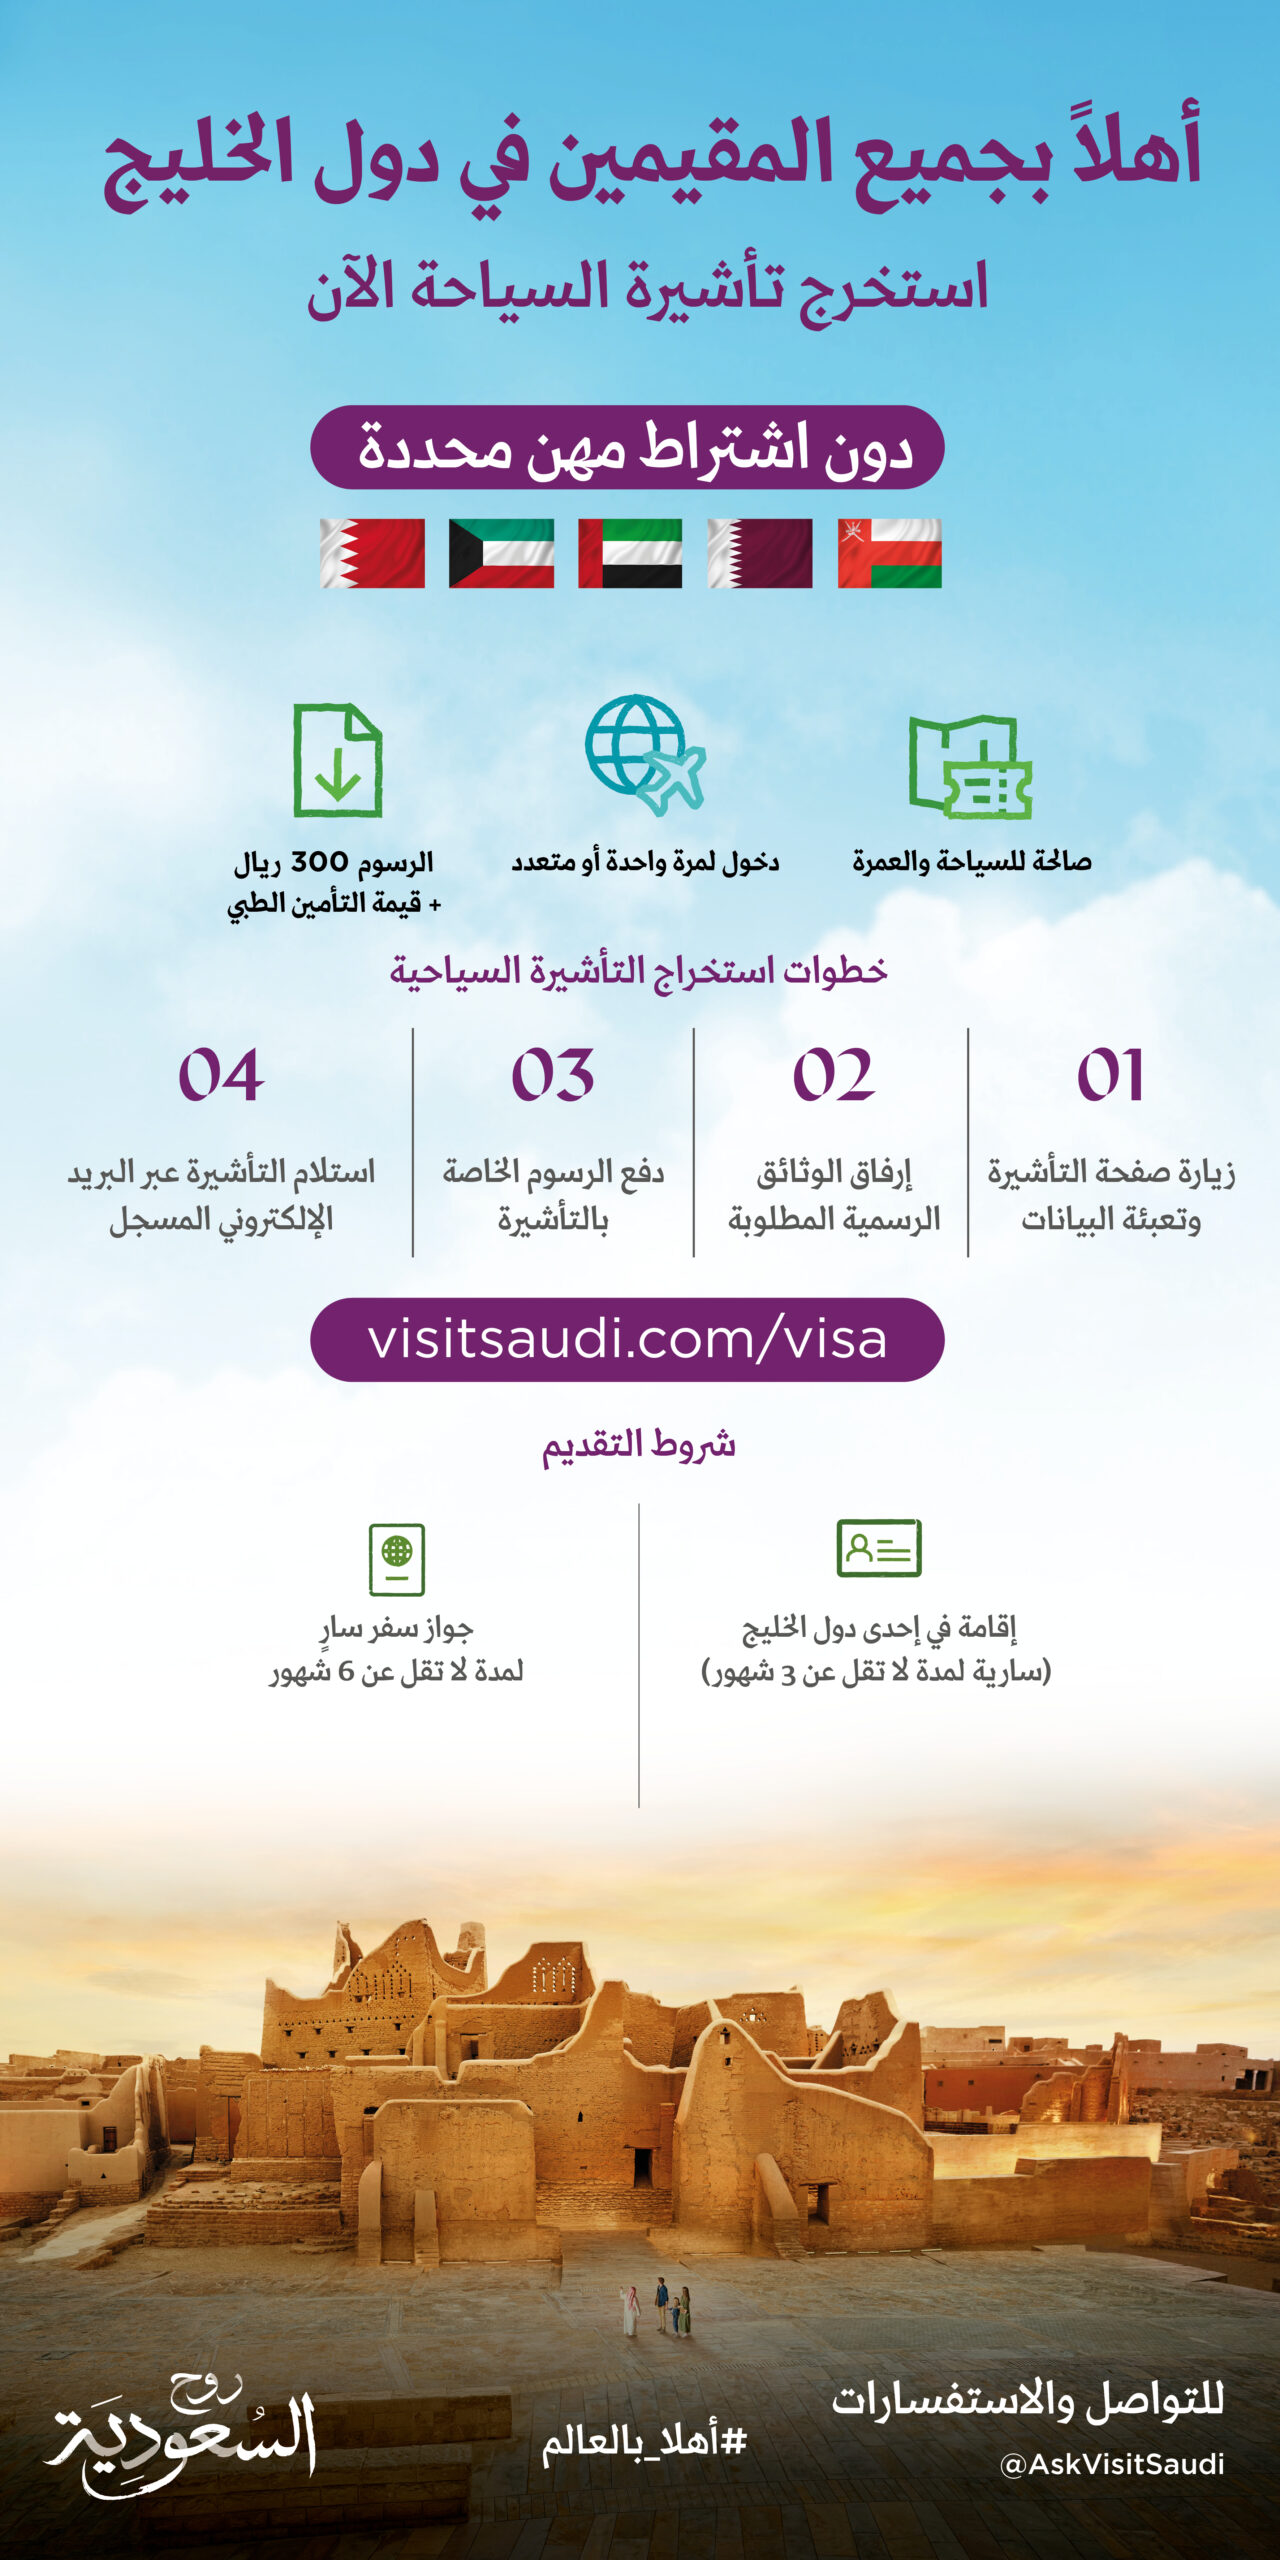 الهيئة السعودية للسياحة: «نرحب بجميع المقيمين بدول الخليج دون اشتراط مهن محددة»